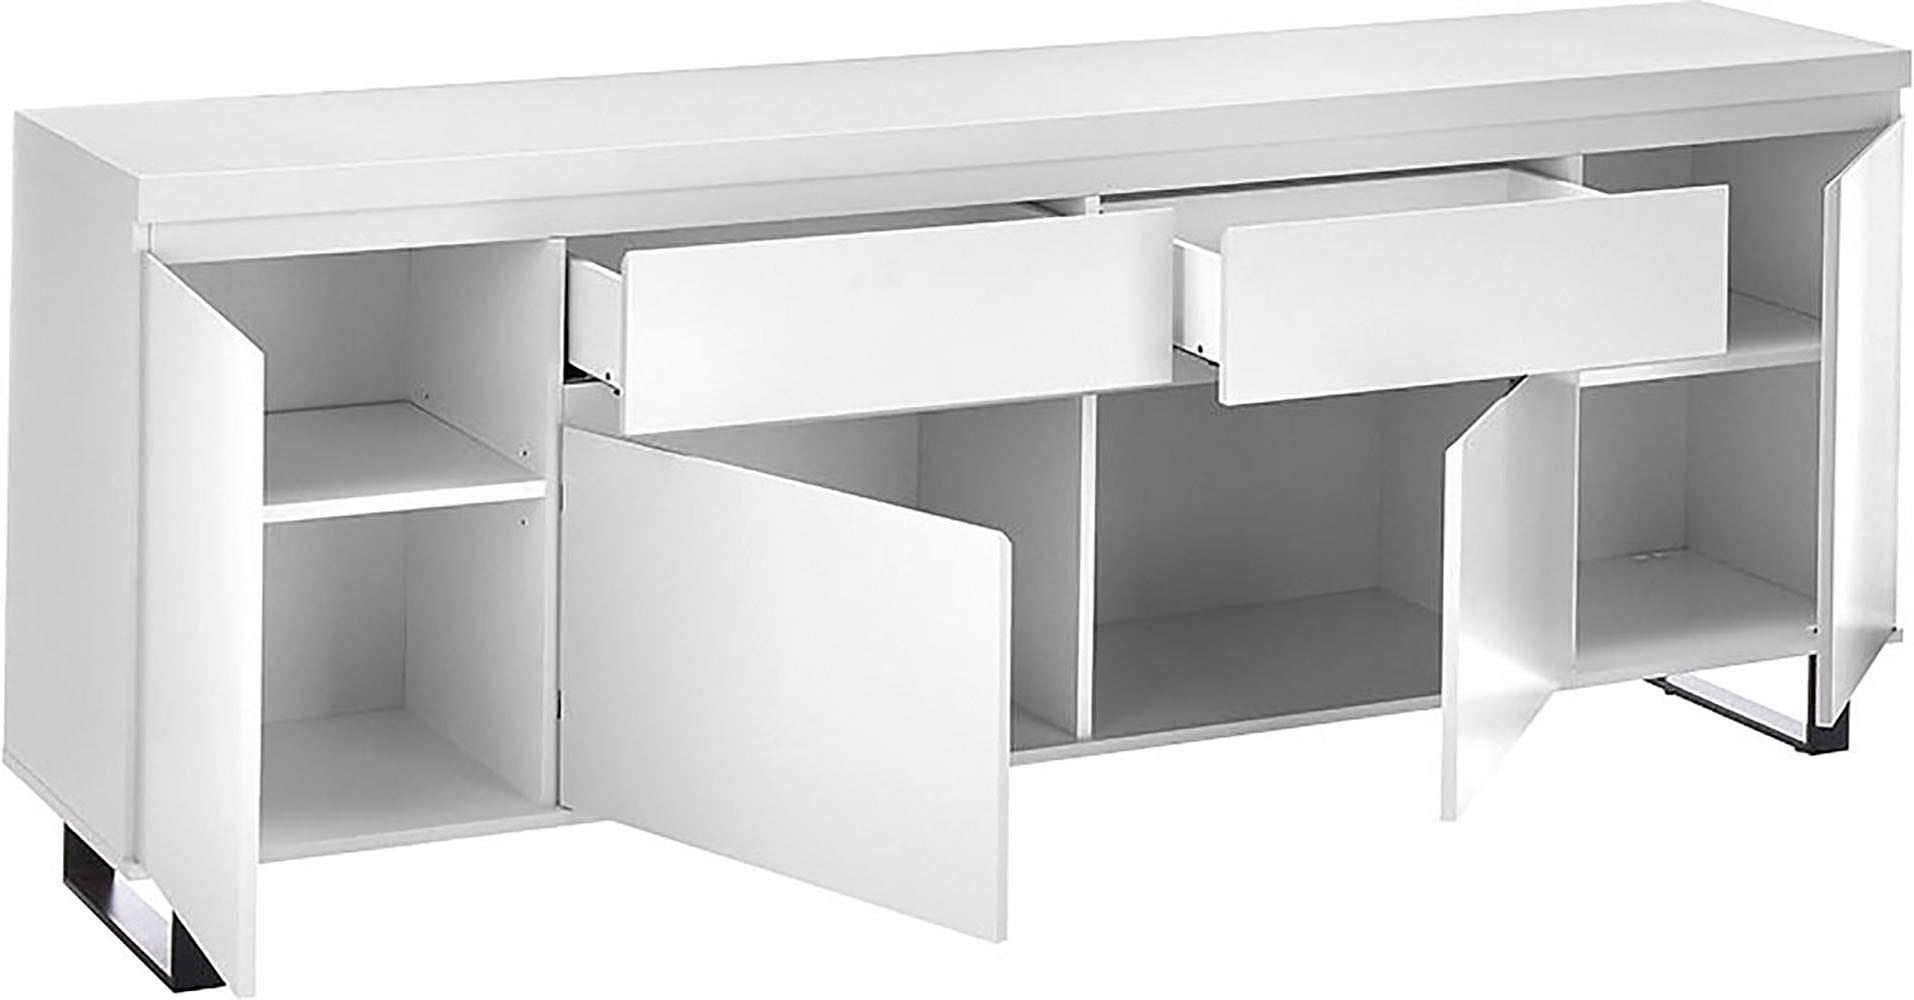 MCA furniture Sideboard »AUSTIN Sideboard«, Türen mit Dämpfung